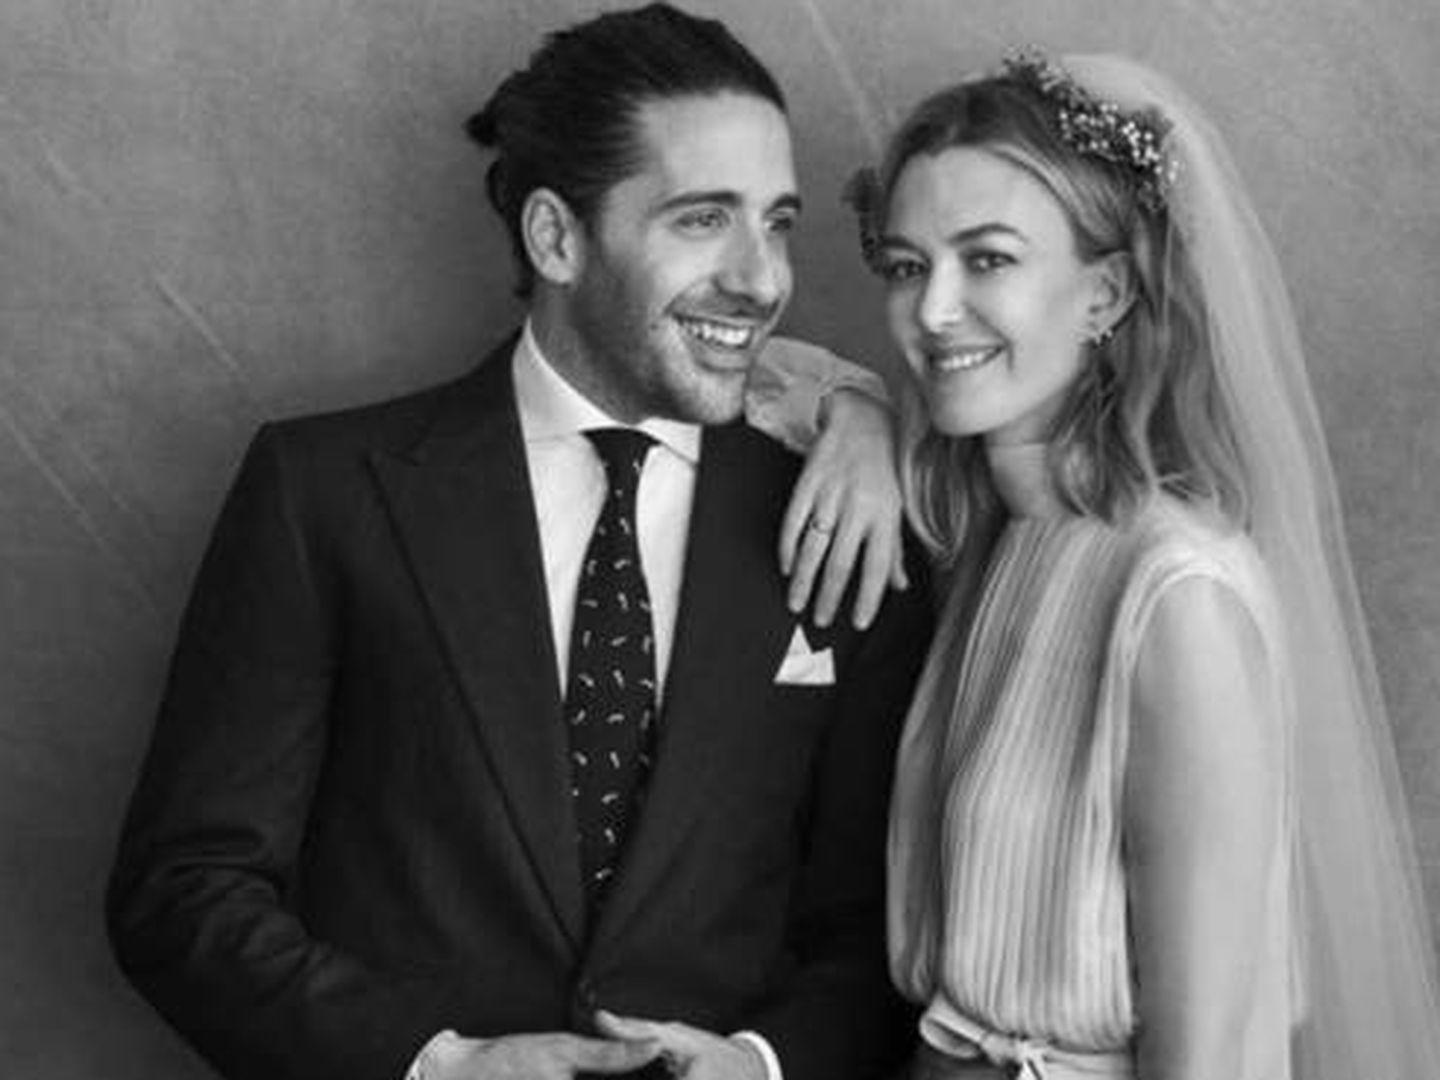  Carlos Torretta y Marta Ortega, en su boda. (Peter Lindbergh)